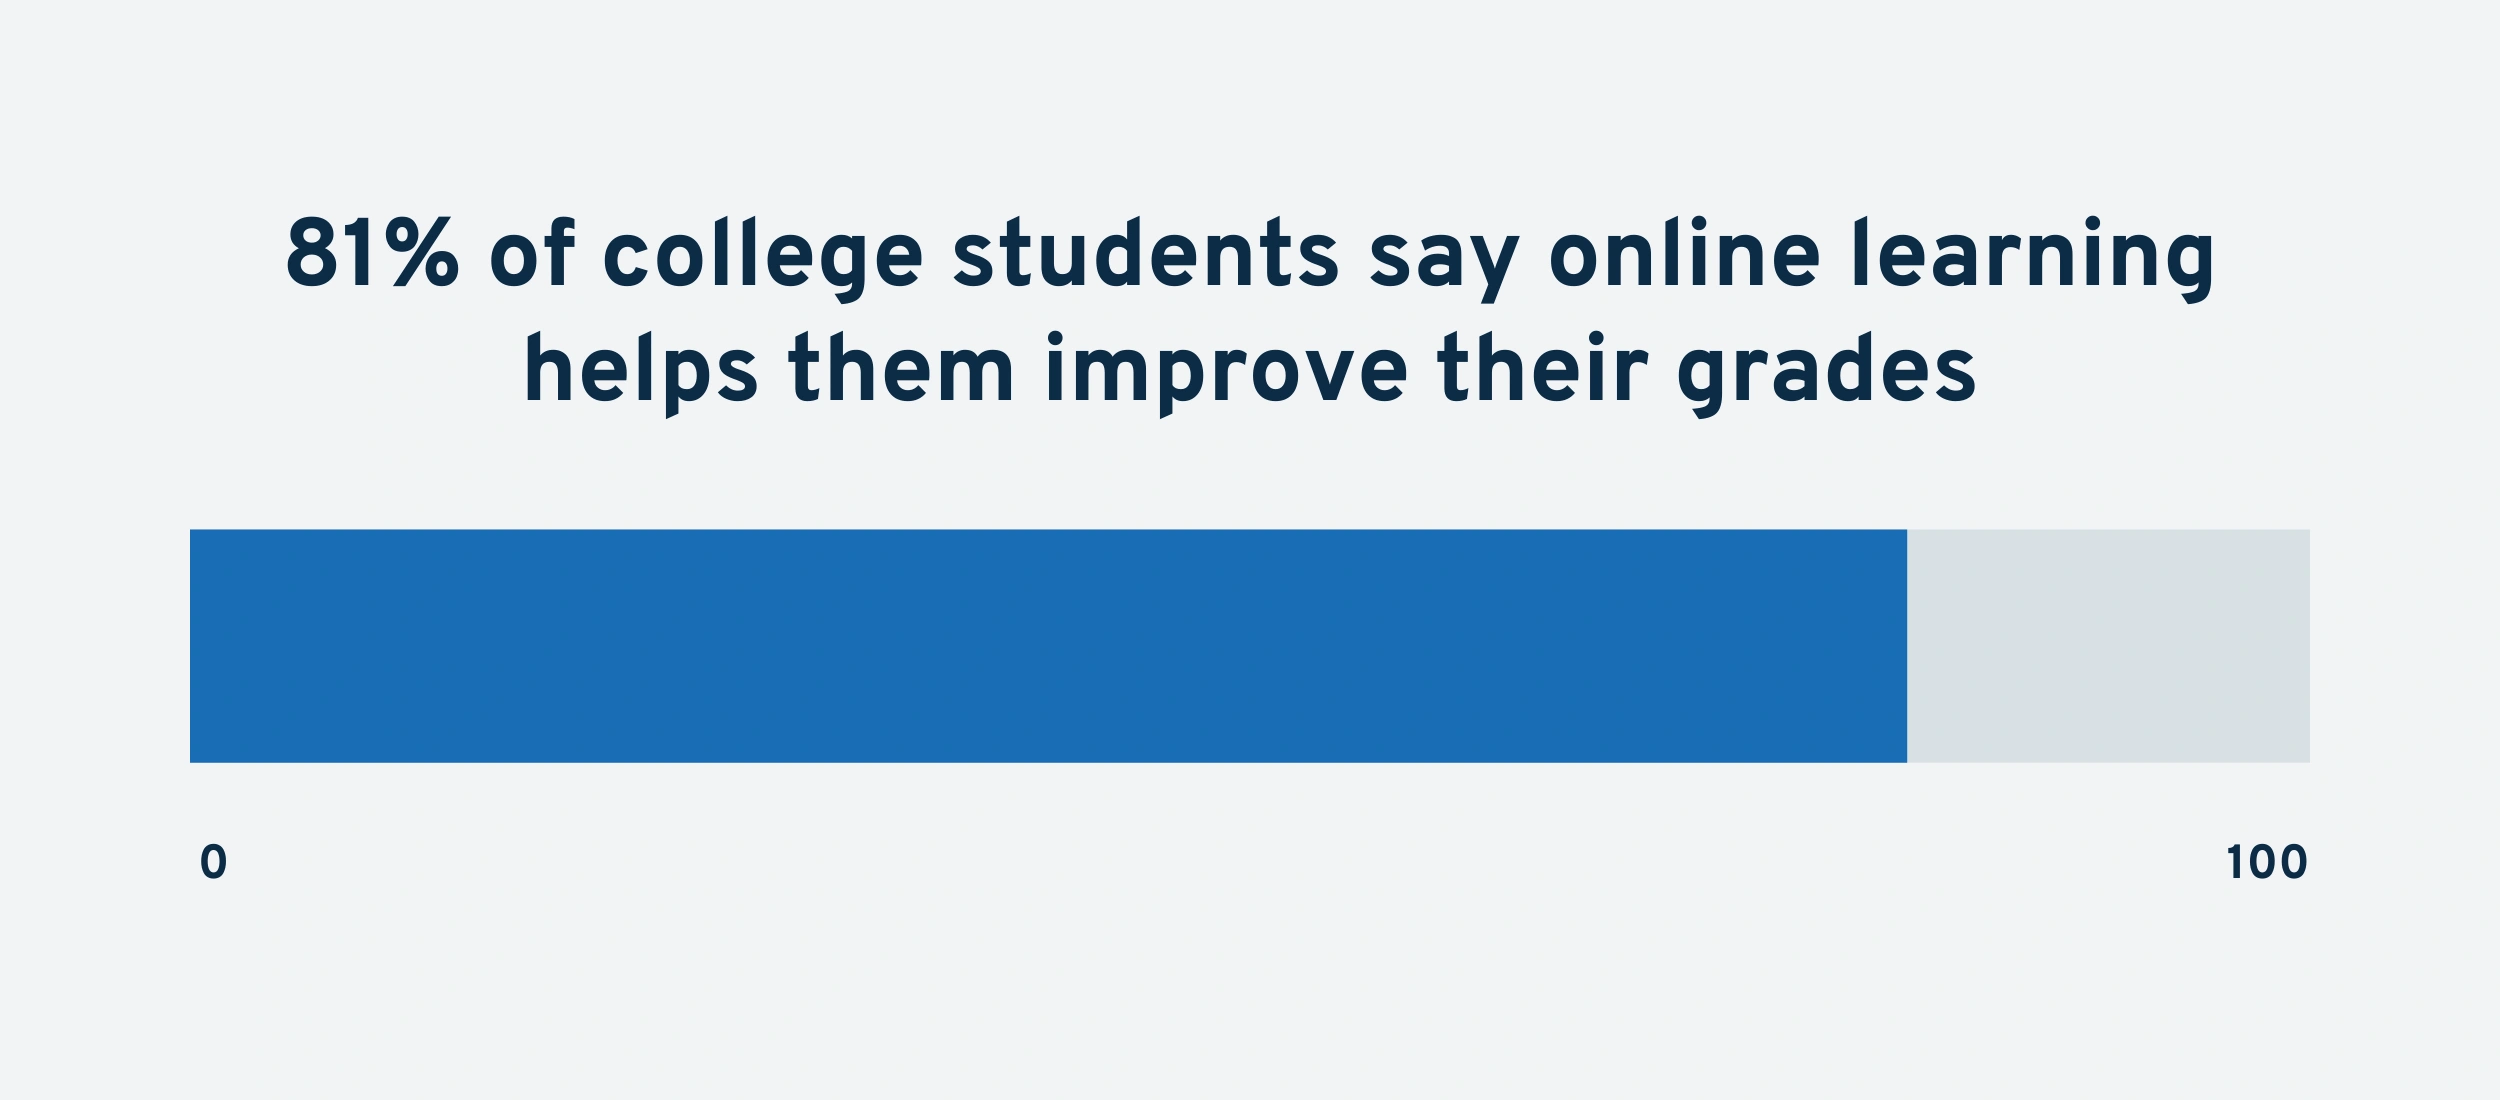 online-learning-improves-grades-min.png